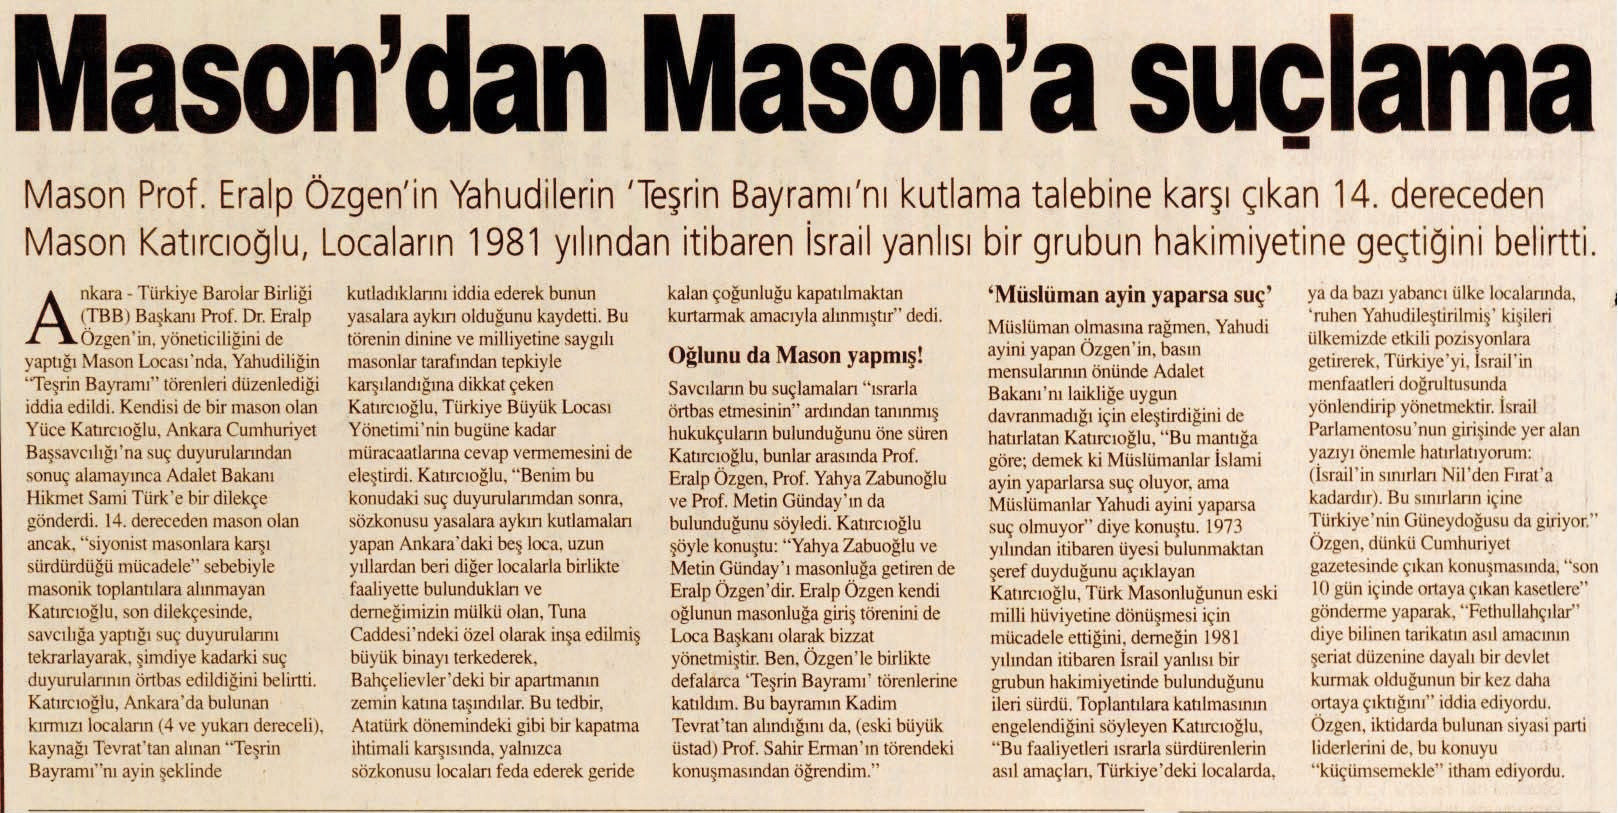 Yeni Şafak, gazeteci Yüce Katırcıoğlu’nun iddialarını 90’lı yıllarda da sayfalarına taşımıştı.